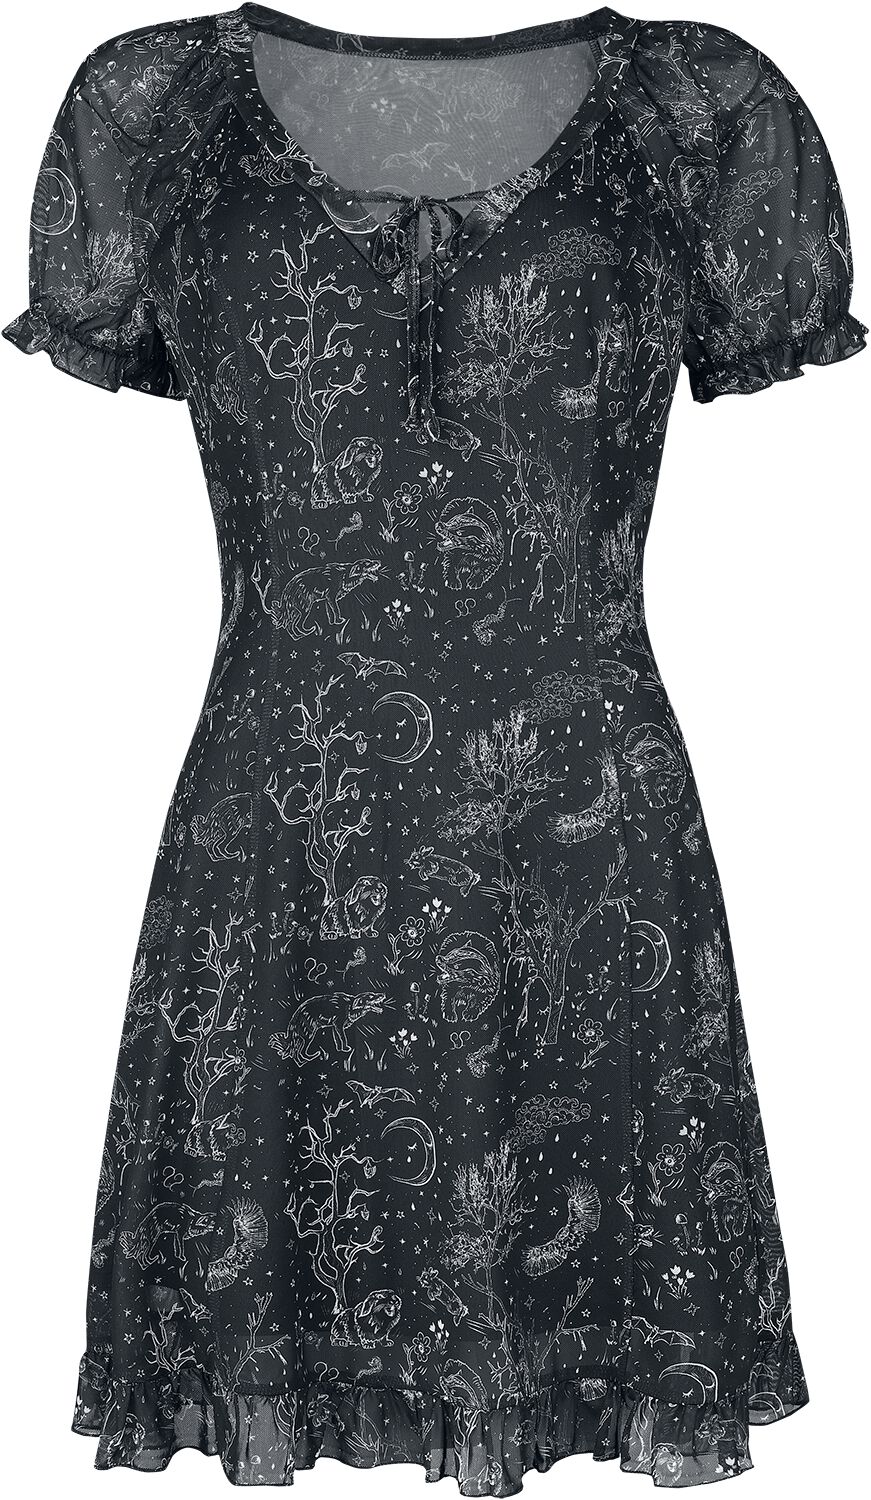 Jawbreaker Night Forest Mesh Dress Kurzes Kleid schwarz weiß in XL